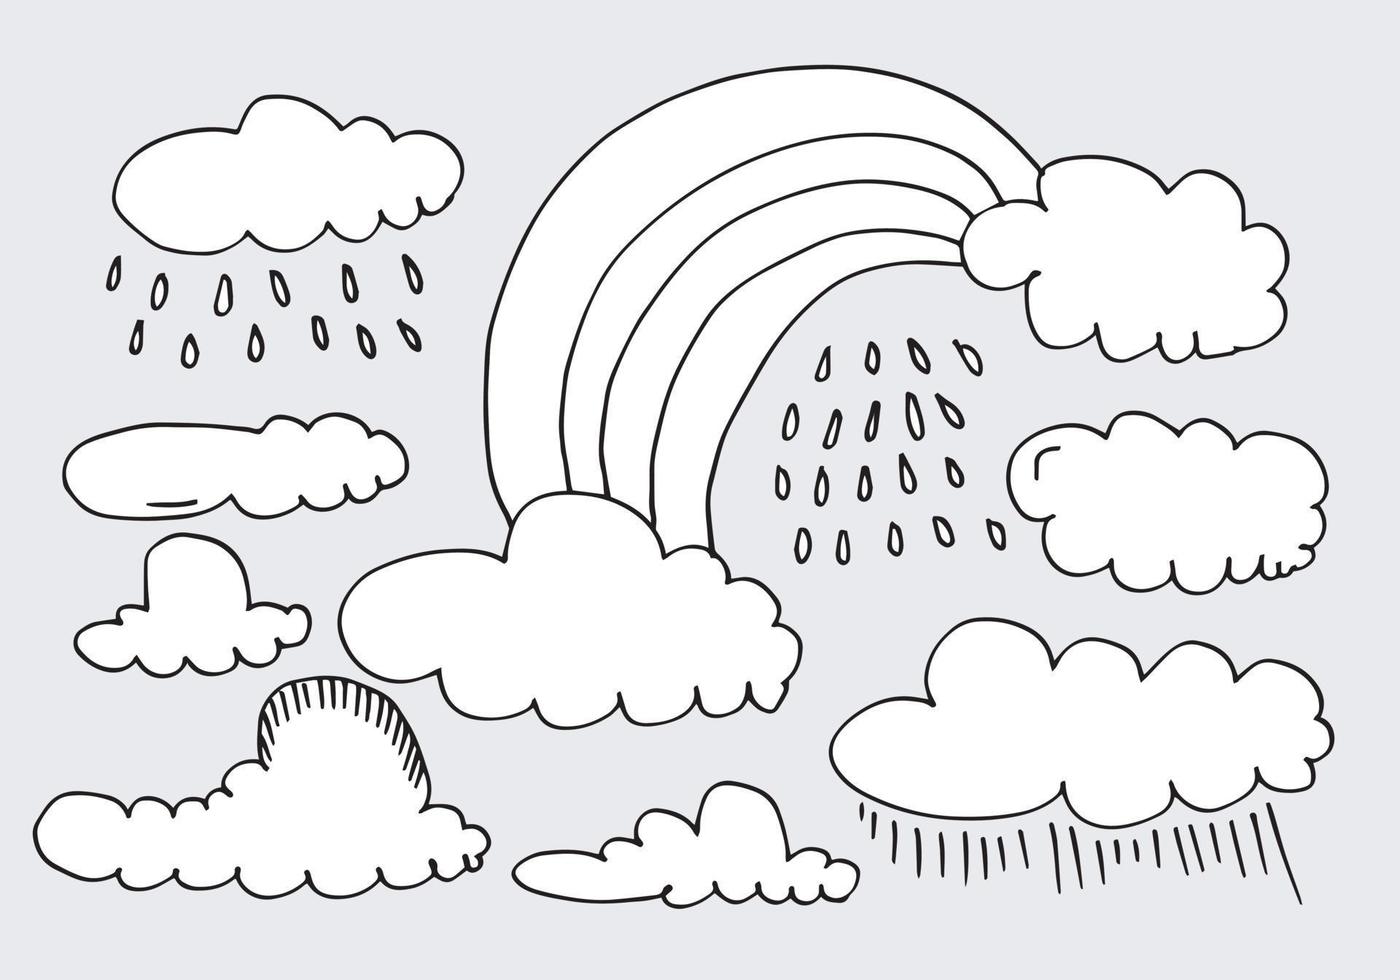 illustrazione di vettore della nuvola di doodle disegnato a mano astratto